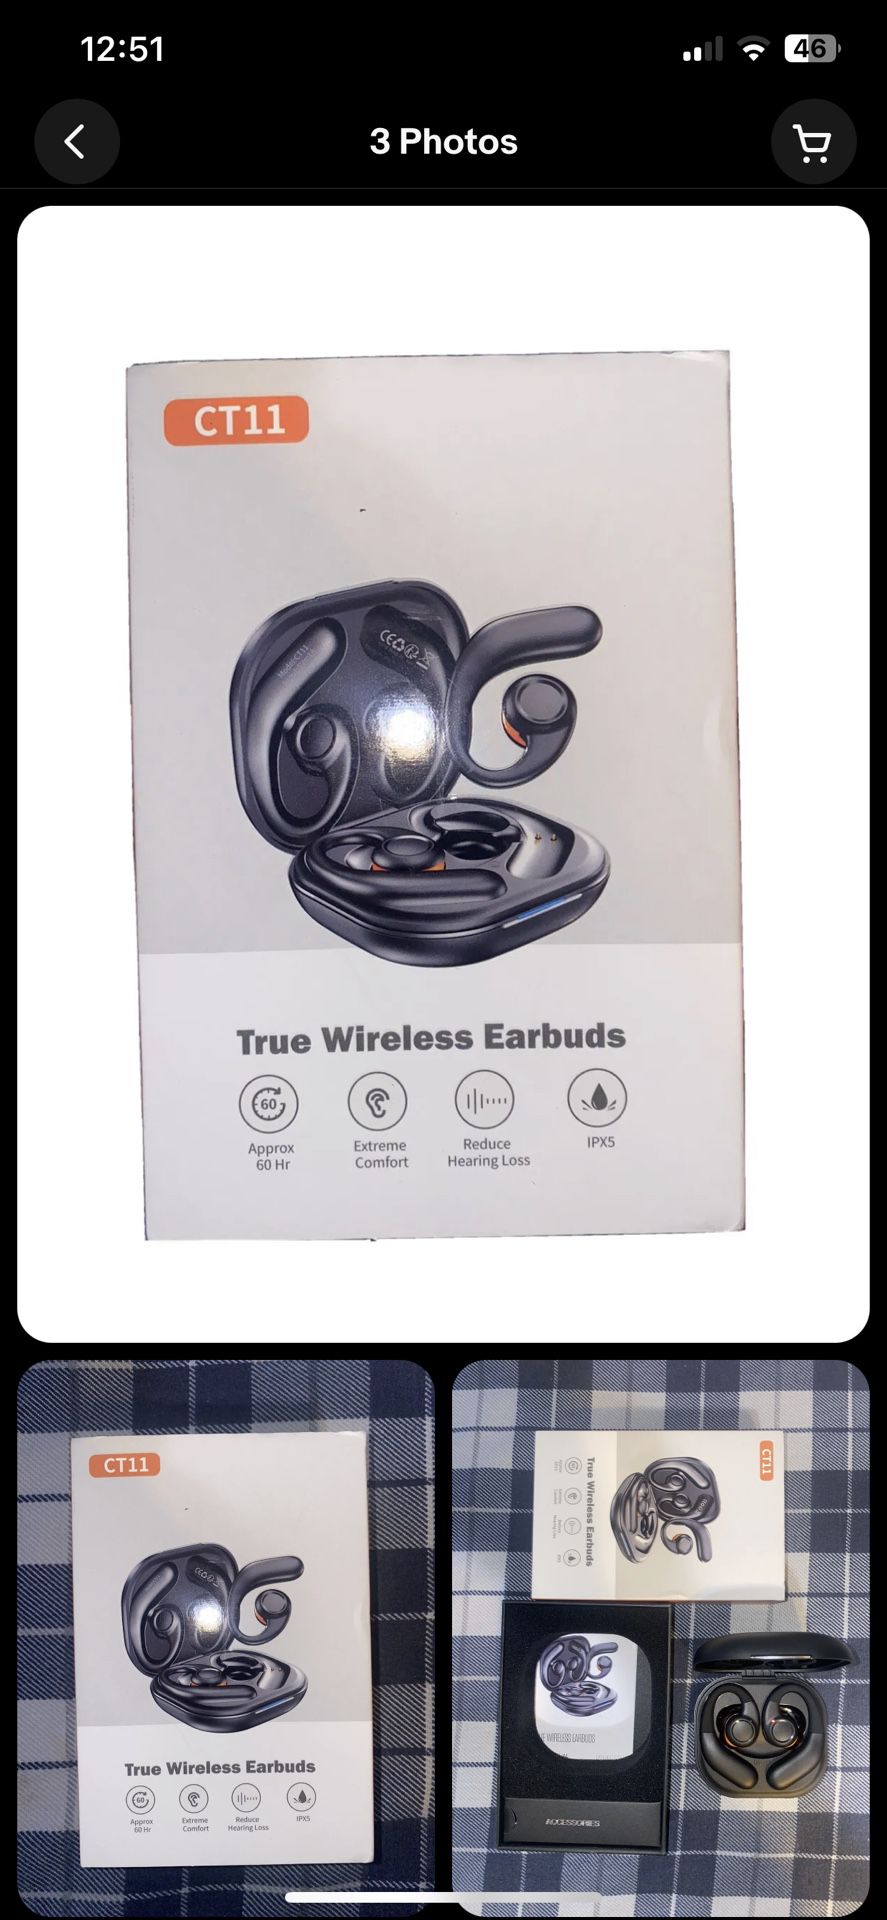 True Wireless Earbuds CT11